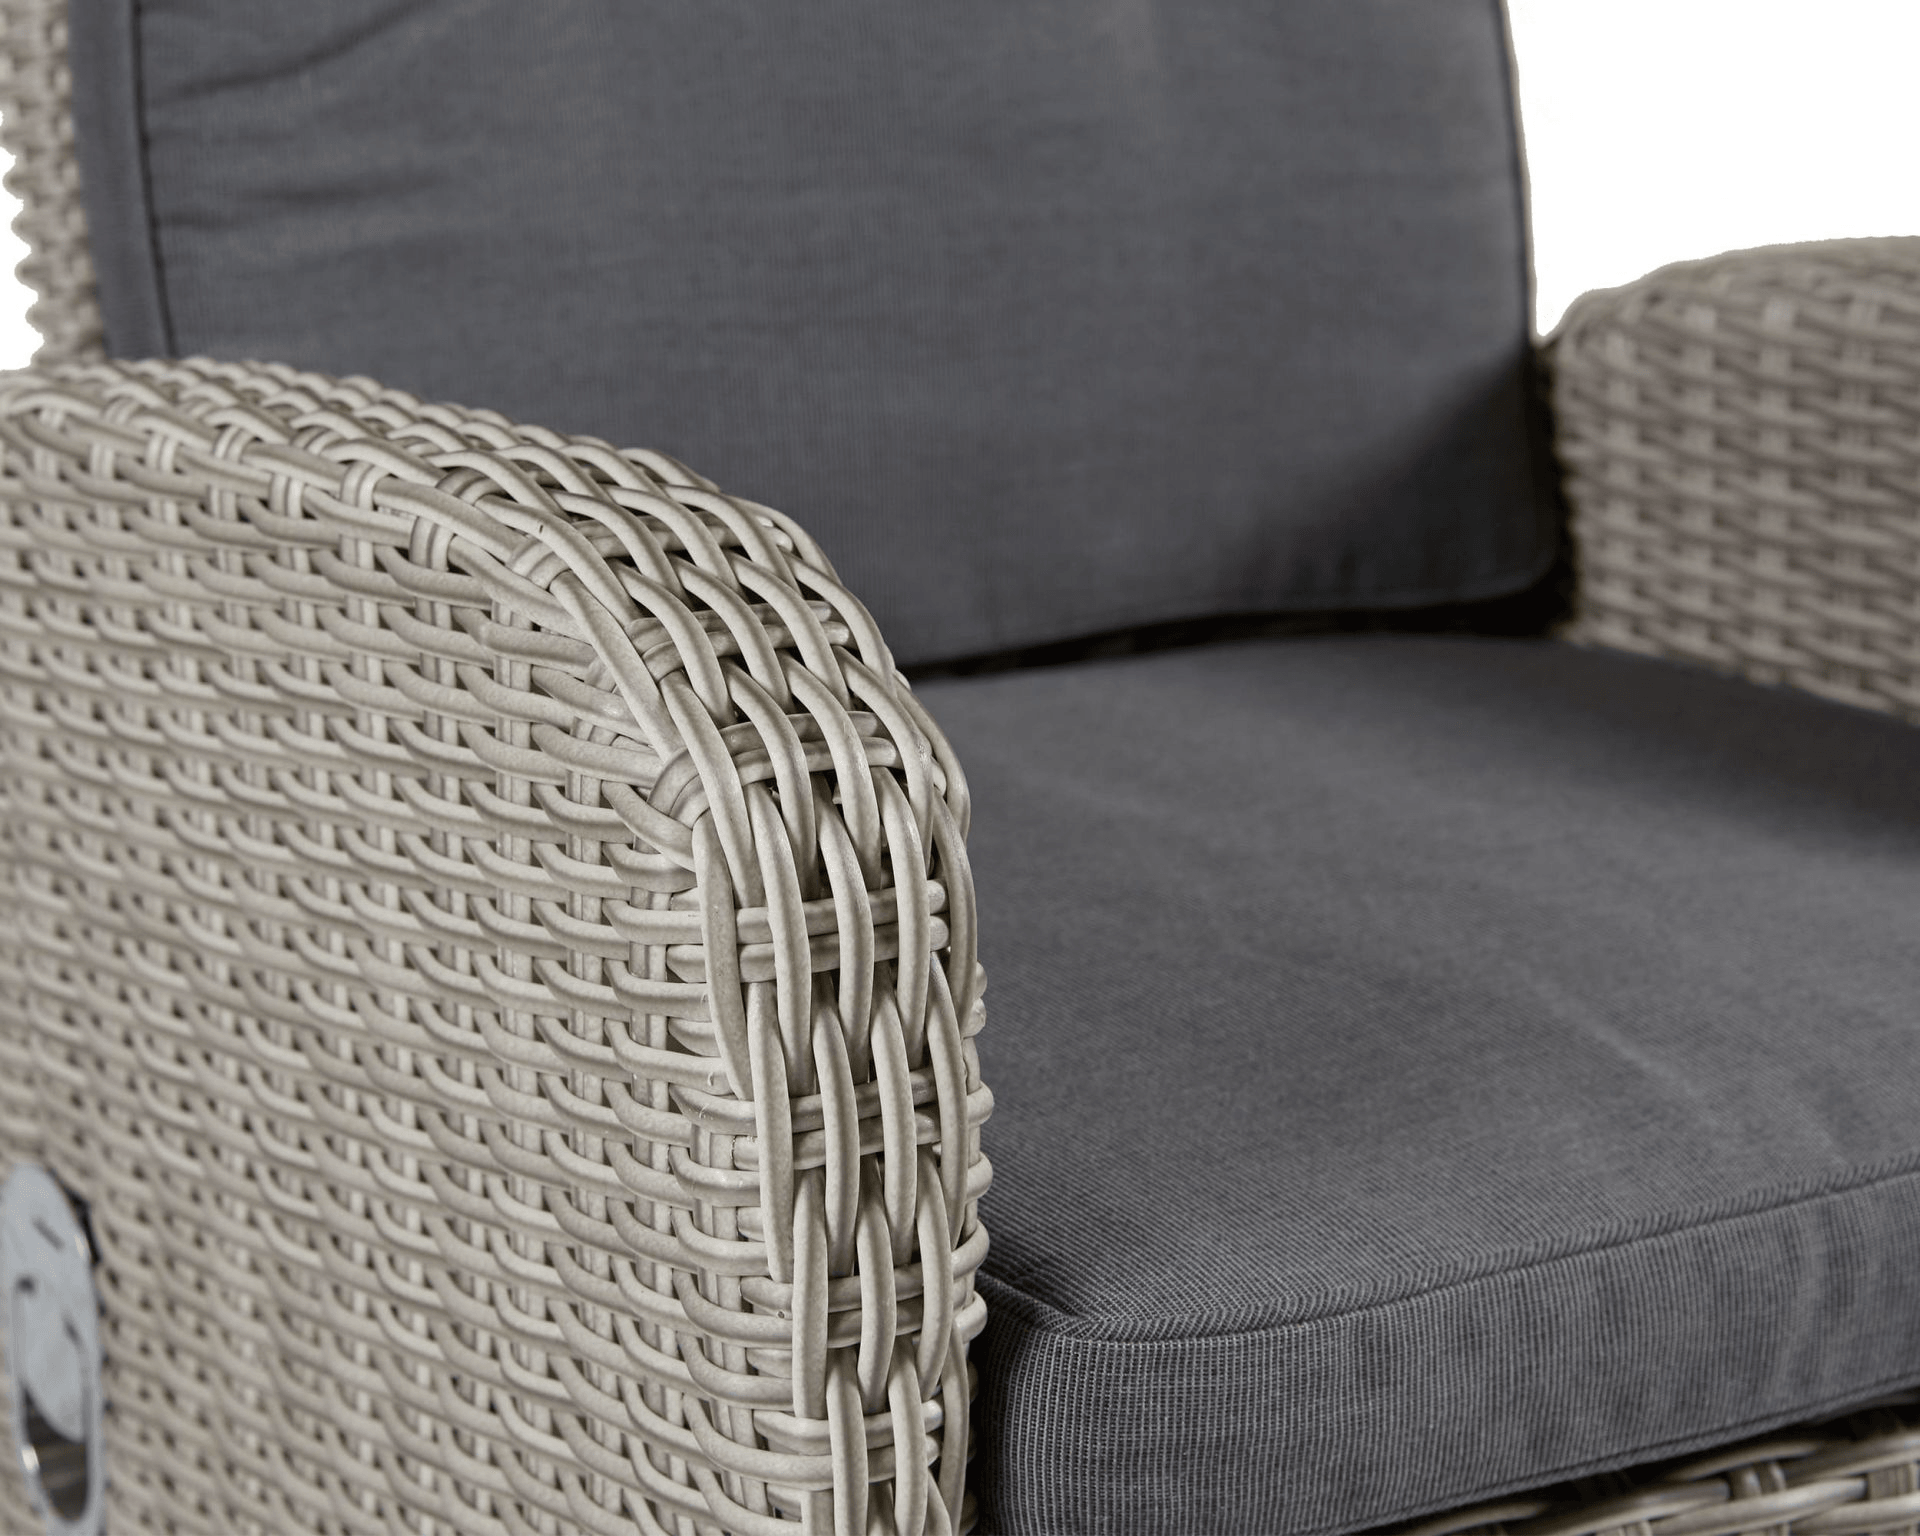 LC Garden Positionsstuhl in stone grey mit manuelle Rückenverstellung - HomeDesign Knaus wir schaffen Inspirationen 